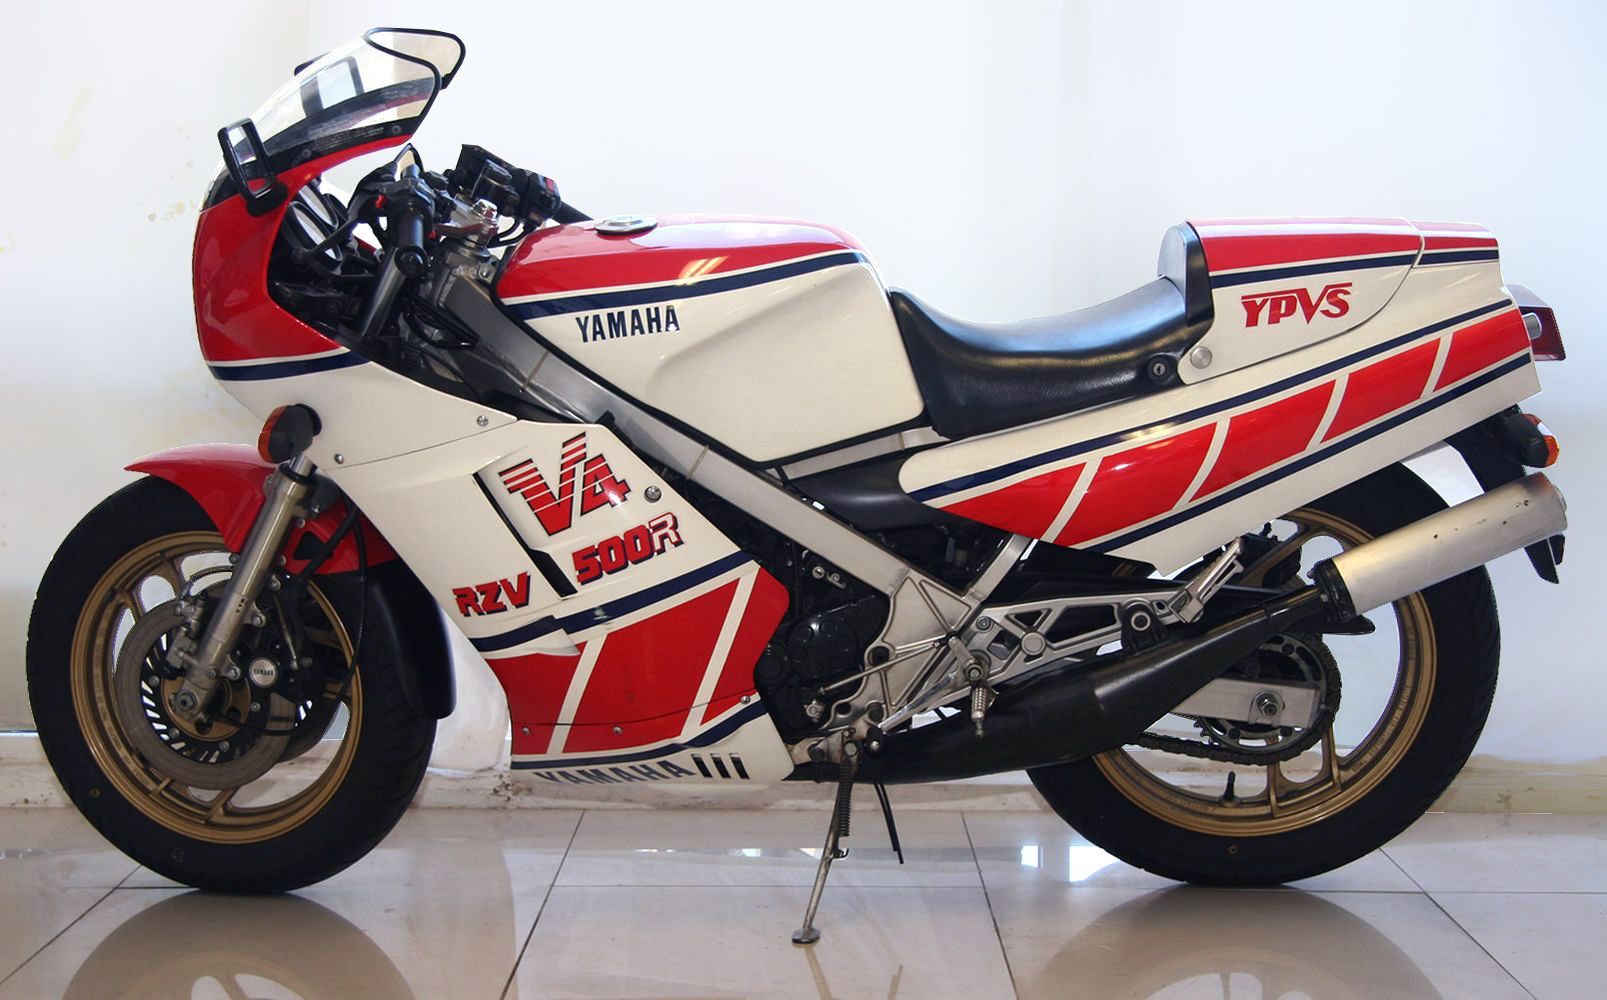 1986 Yamaha RZ500 parked